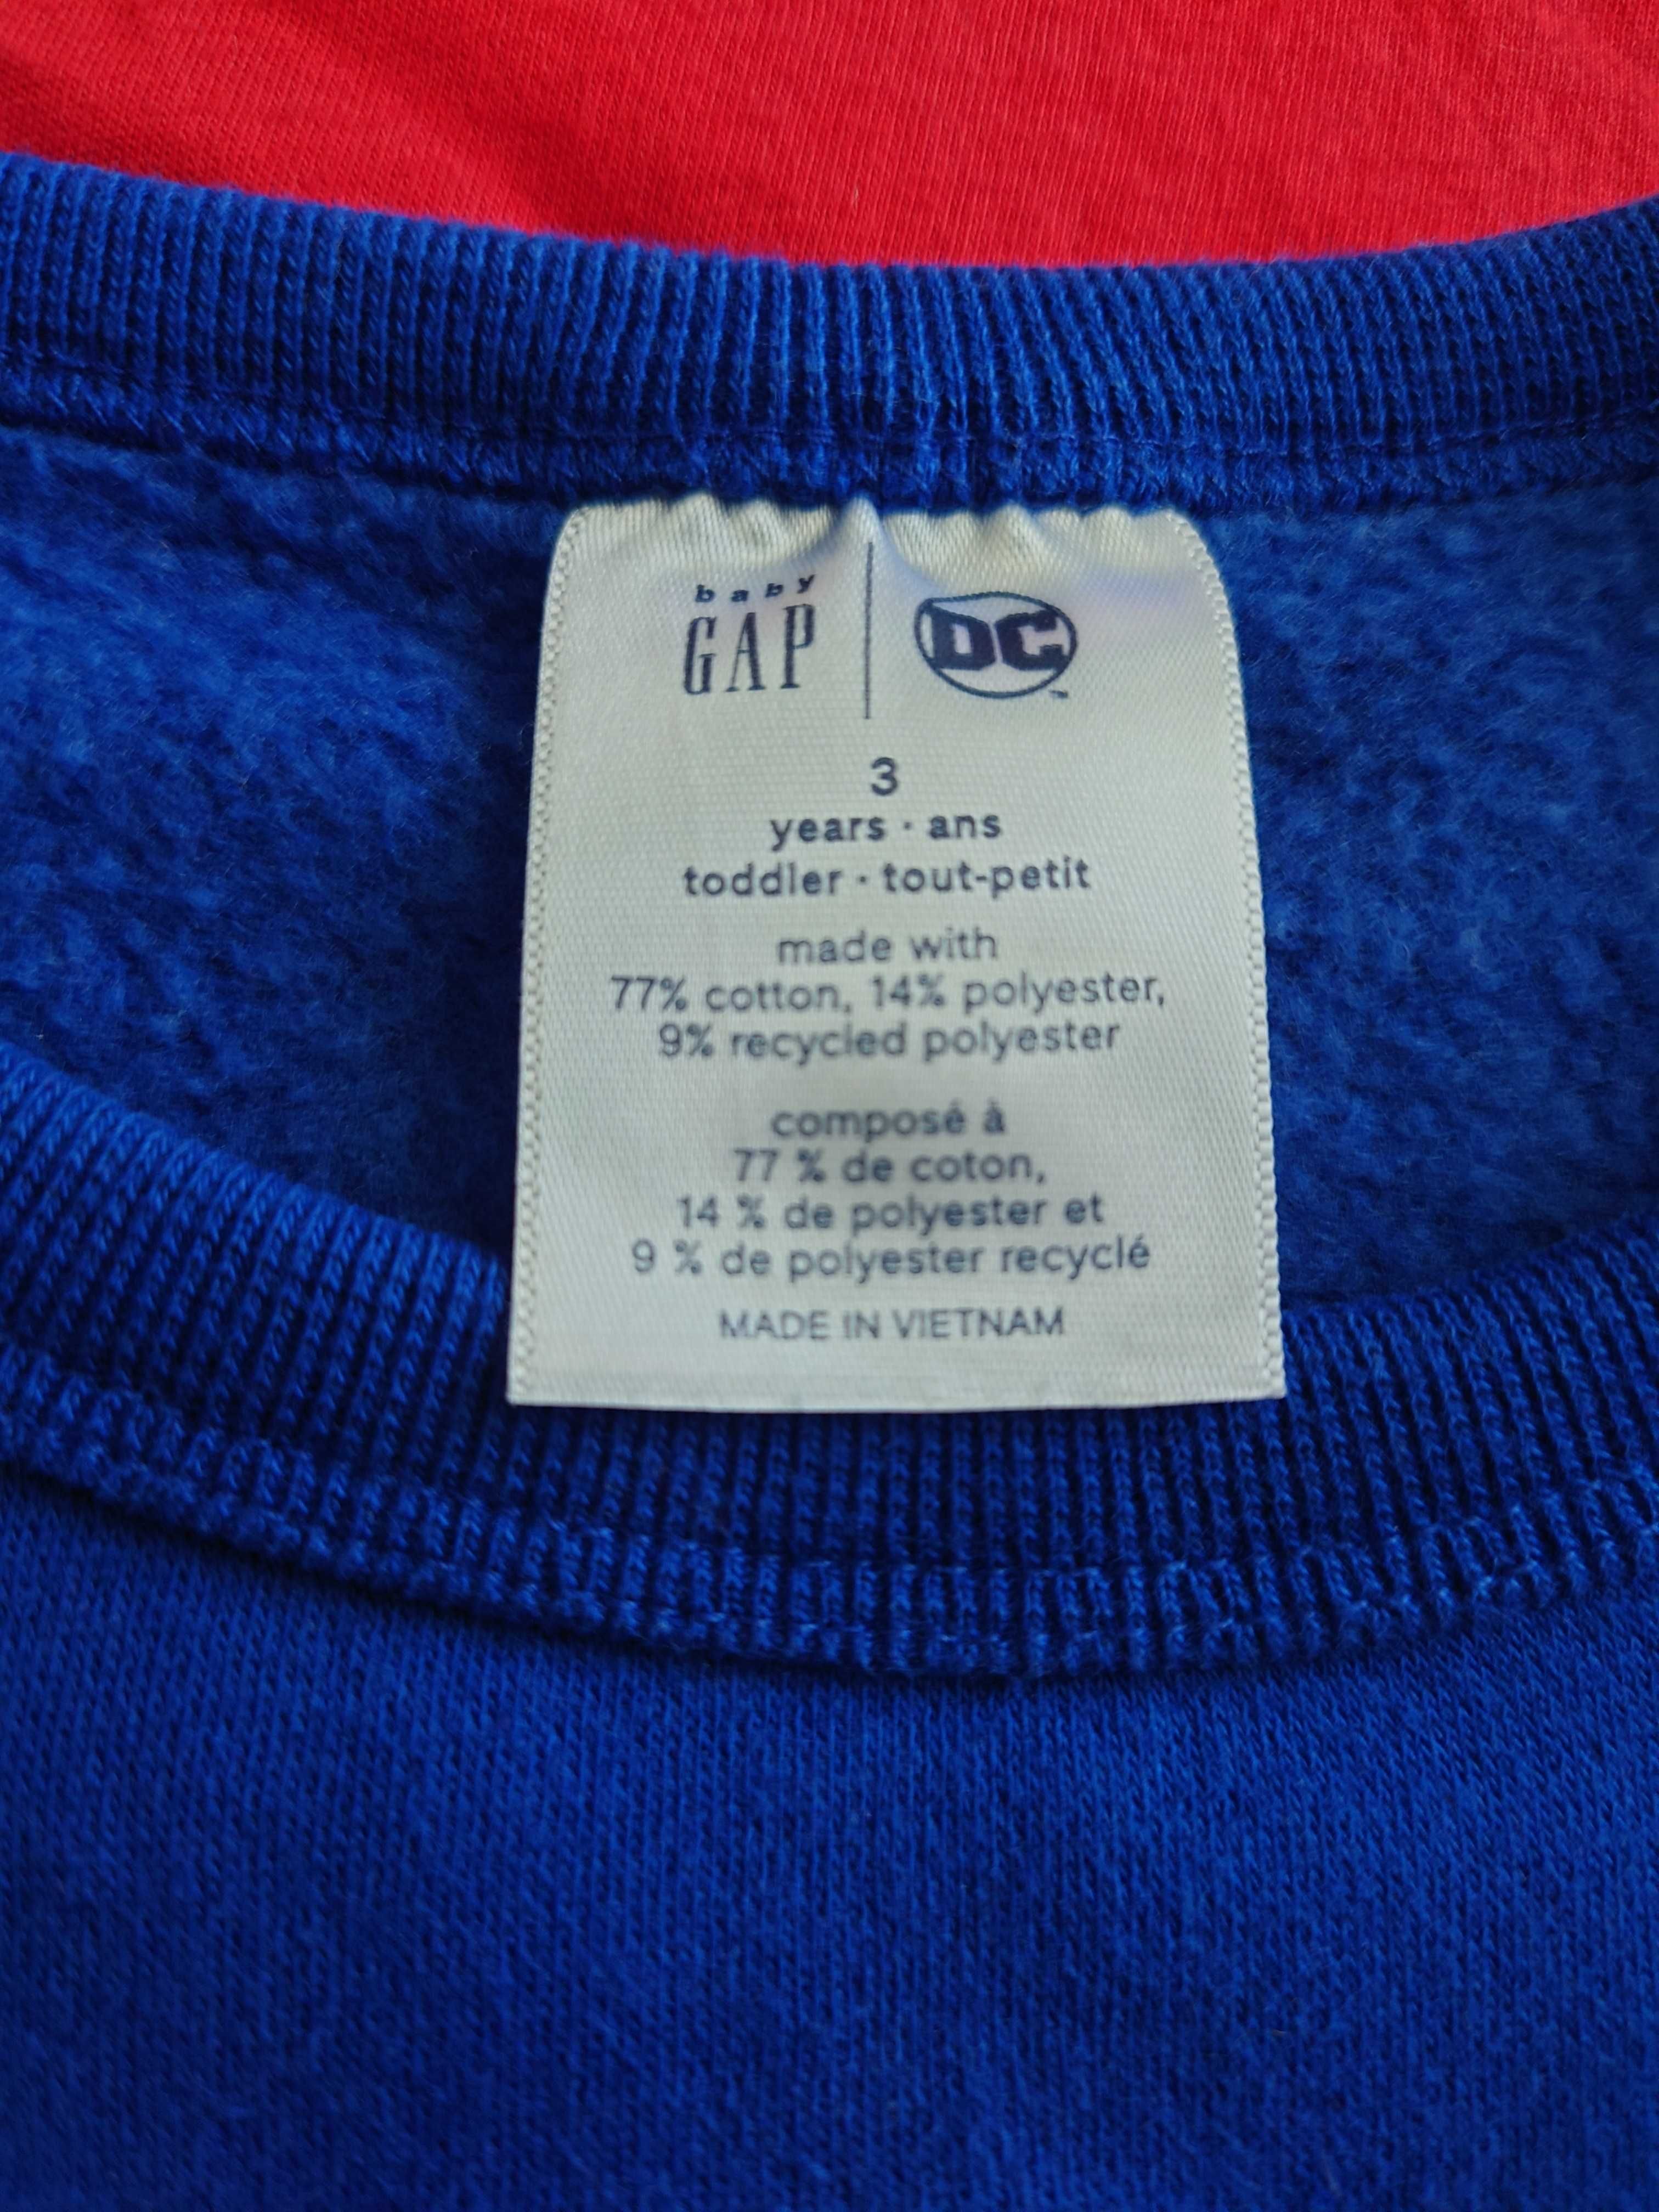 Bluza GAP cu pelerina detasabila, pentru copii, marime 100 CM (3 ani)